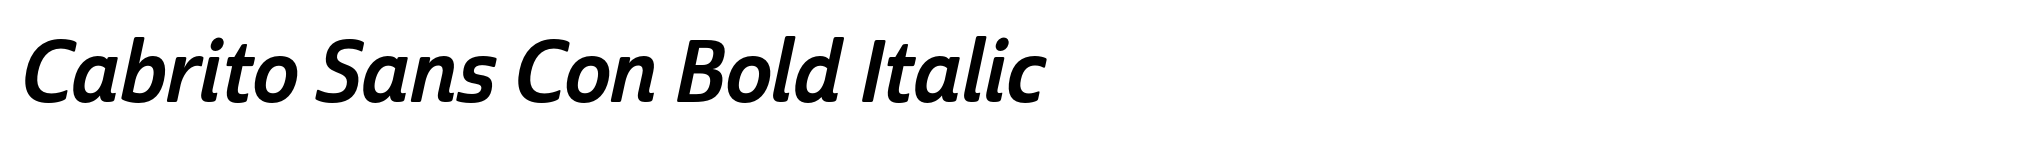 Cabrito Sans Con Bold Italic image